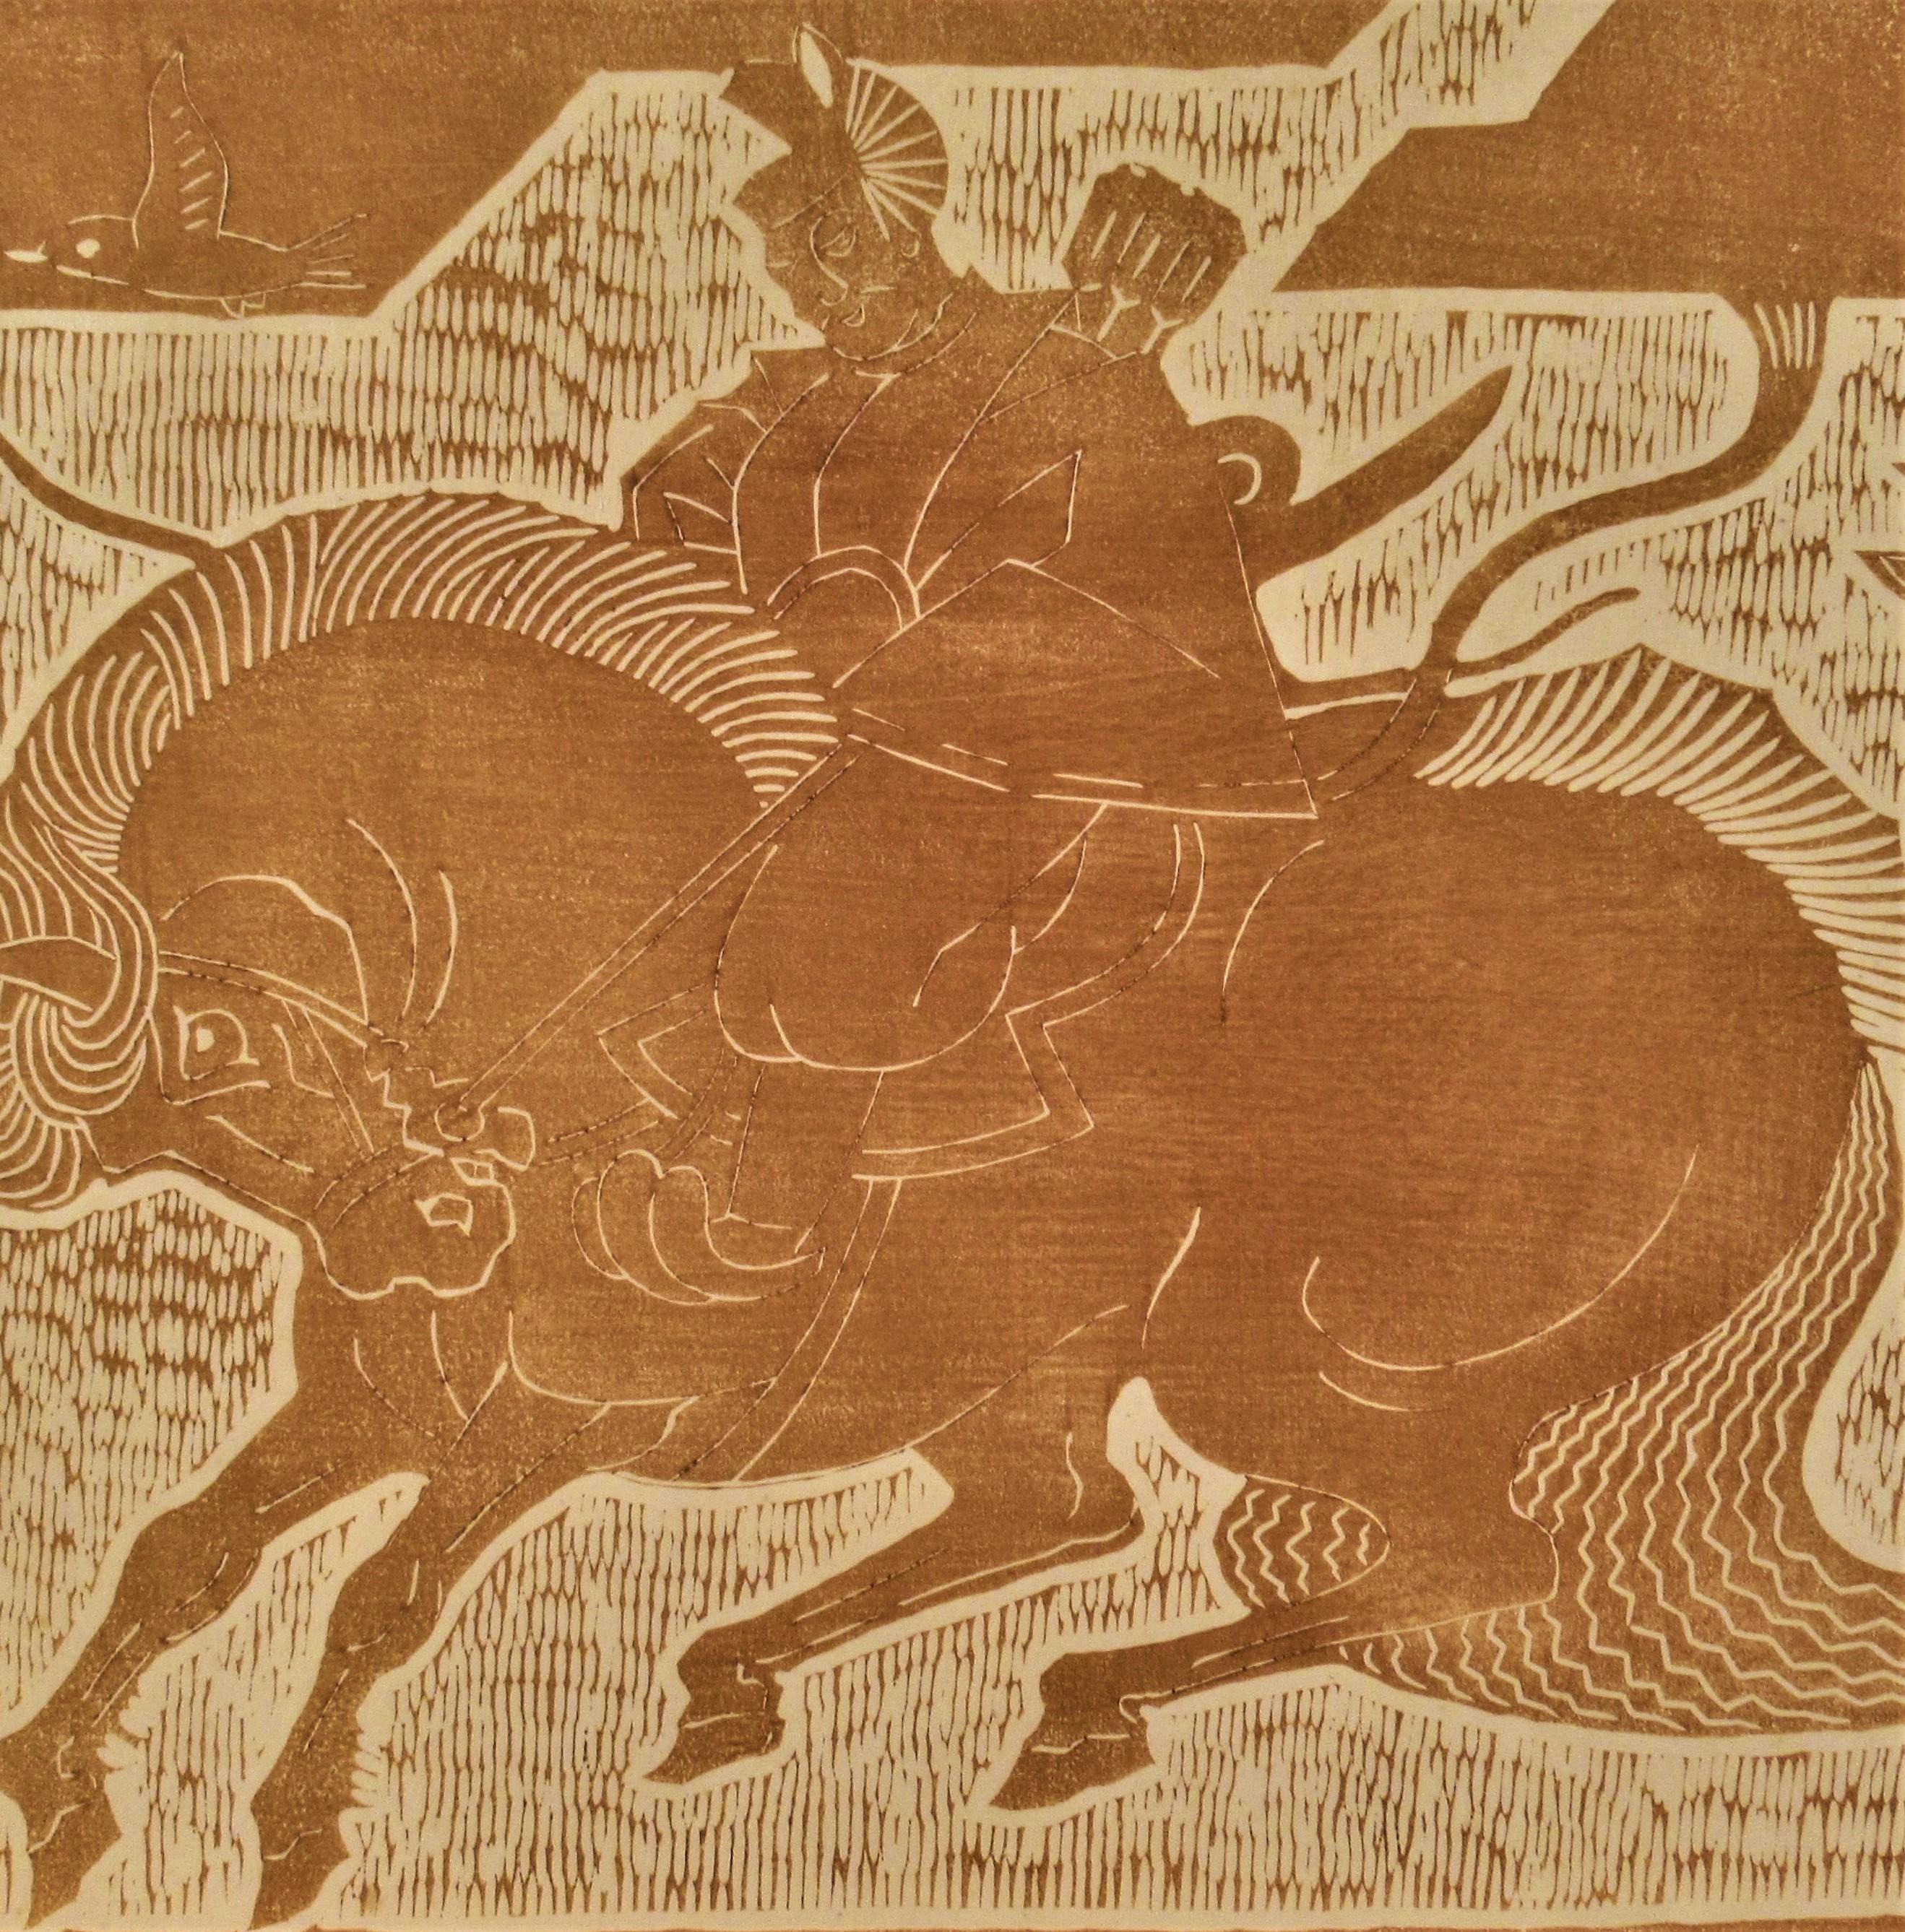 Untitled, Two Horsemen - Print by Tomikichiro Tokuriki